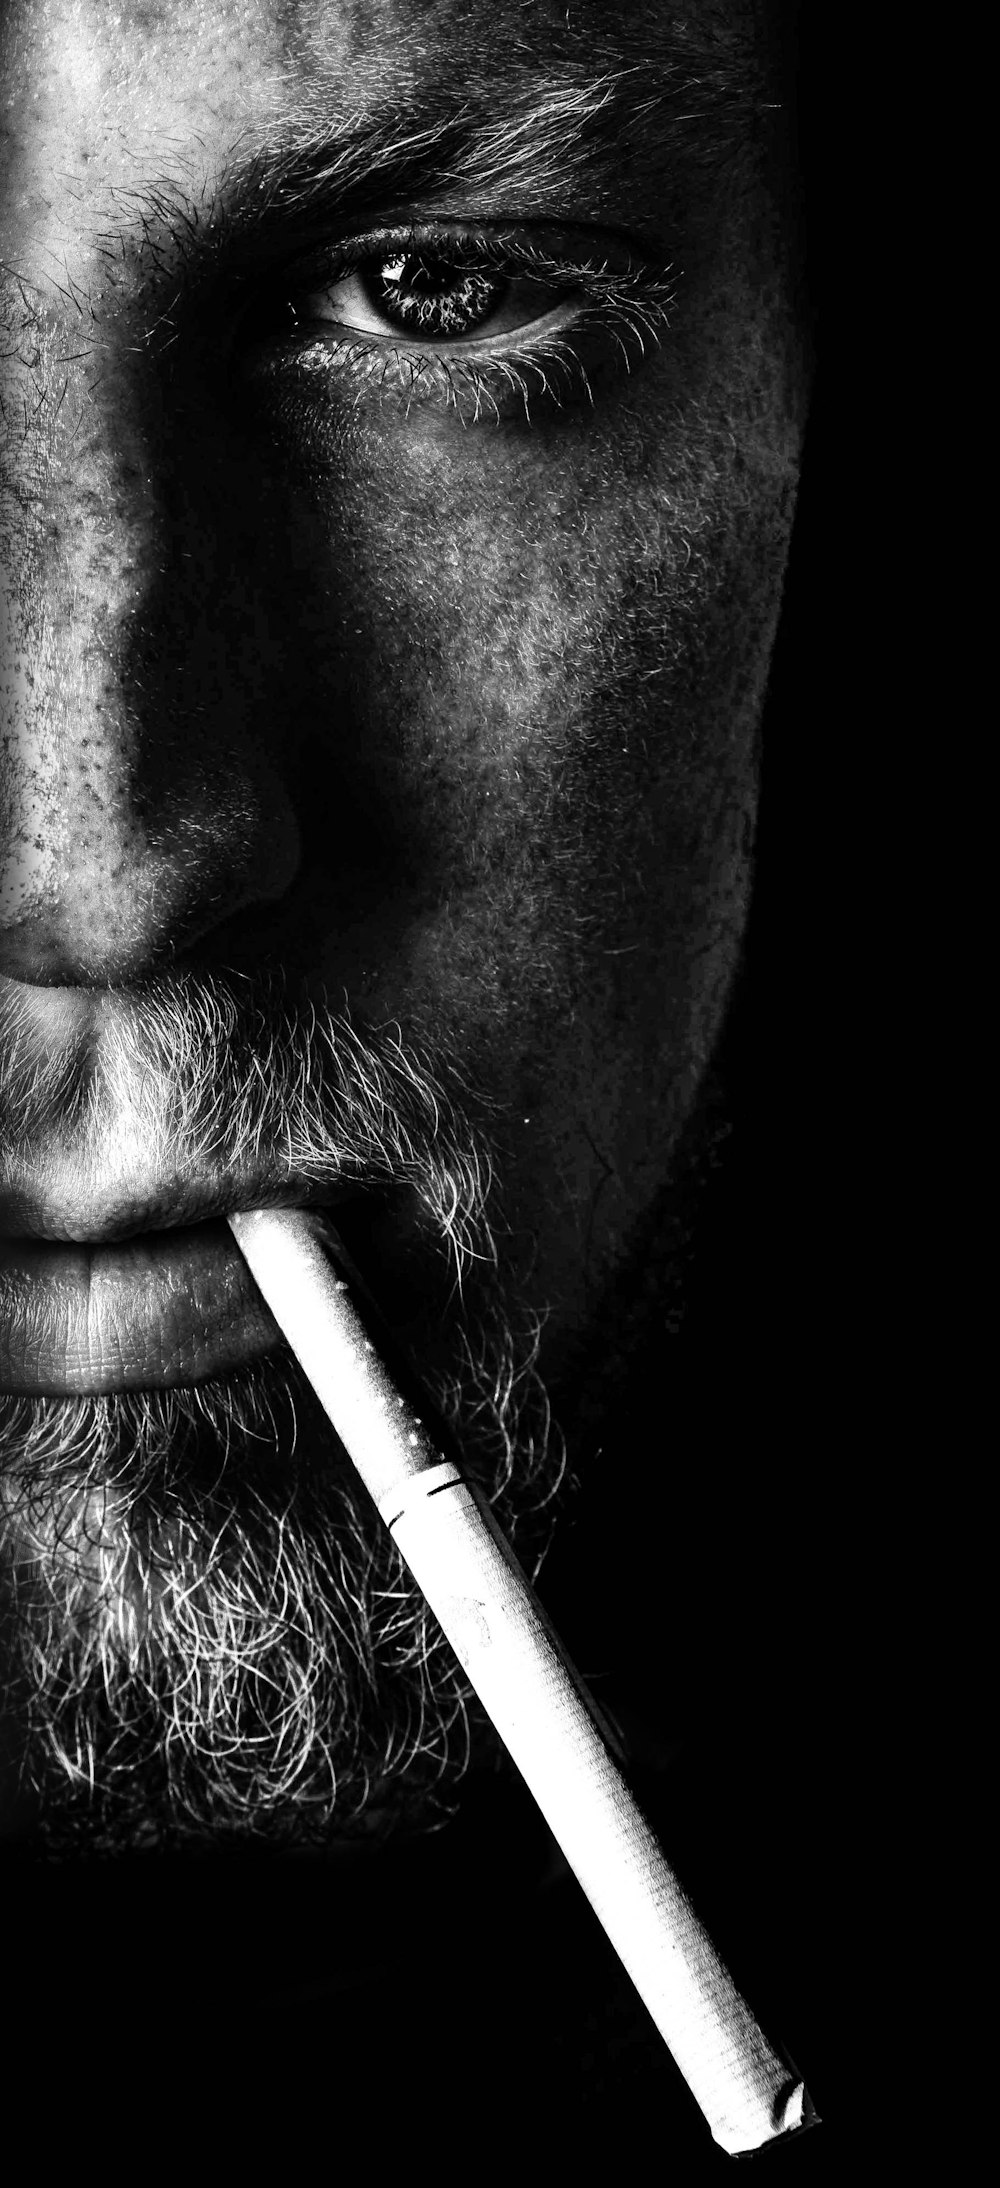 グレースケール写真でタバコを吸う男